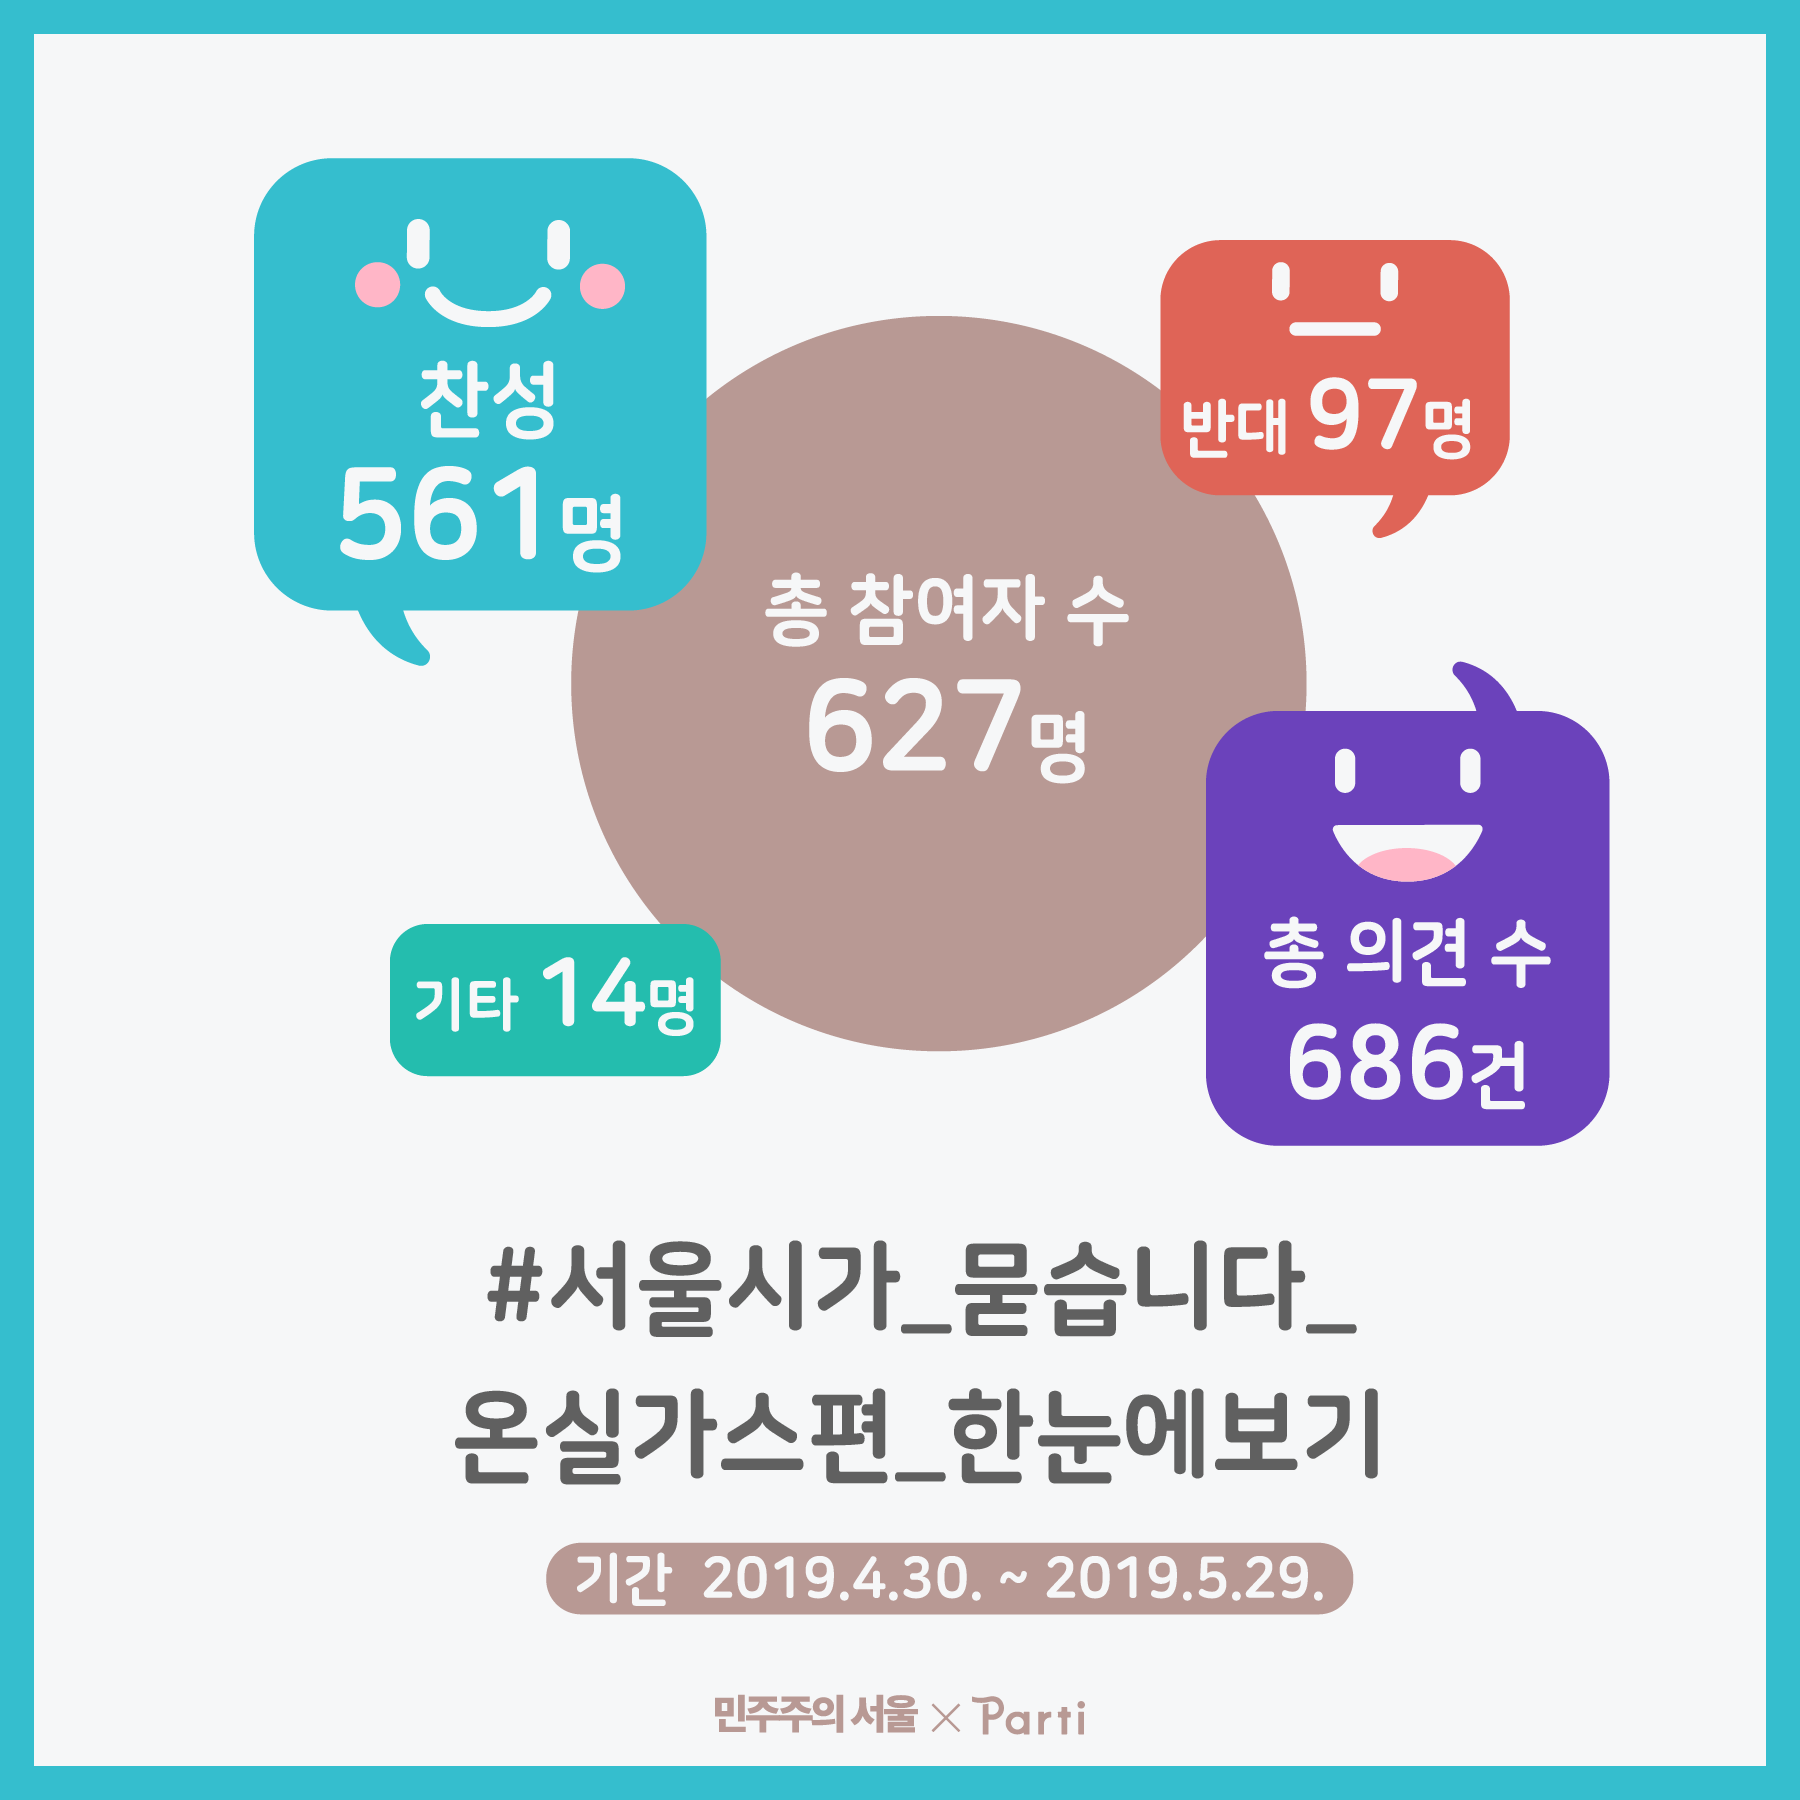 총 672명이 참여했고, 찬성 561명, 반대 97명, 기타 14명입니다.  #서울시가 묻습니다 온실가스편 한눈에보기 기간 2019년 4월 30일부터 2019년 5월 29일까지